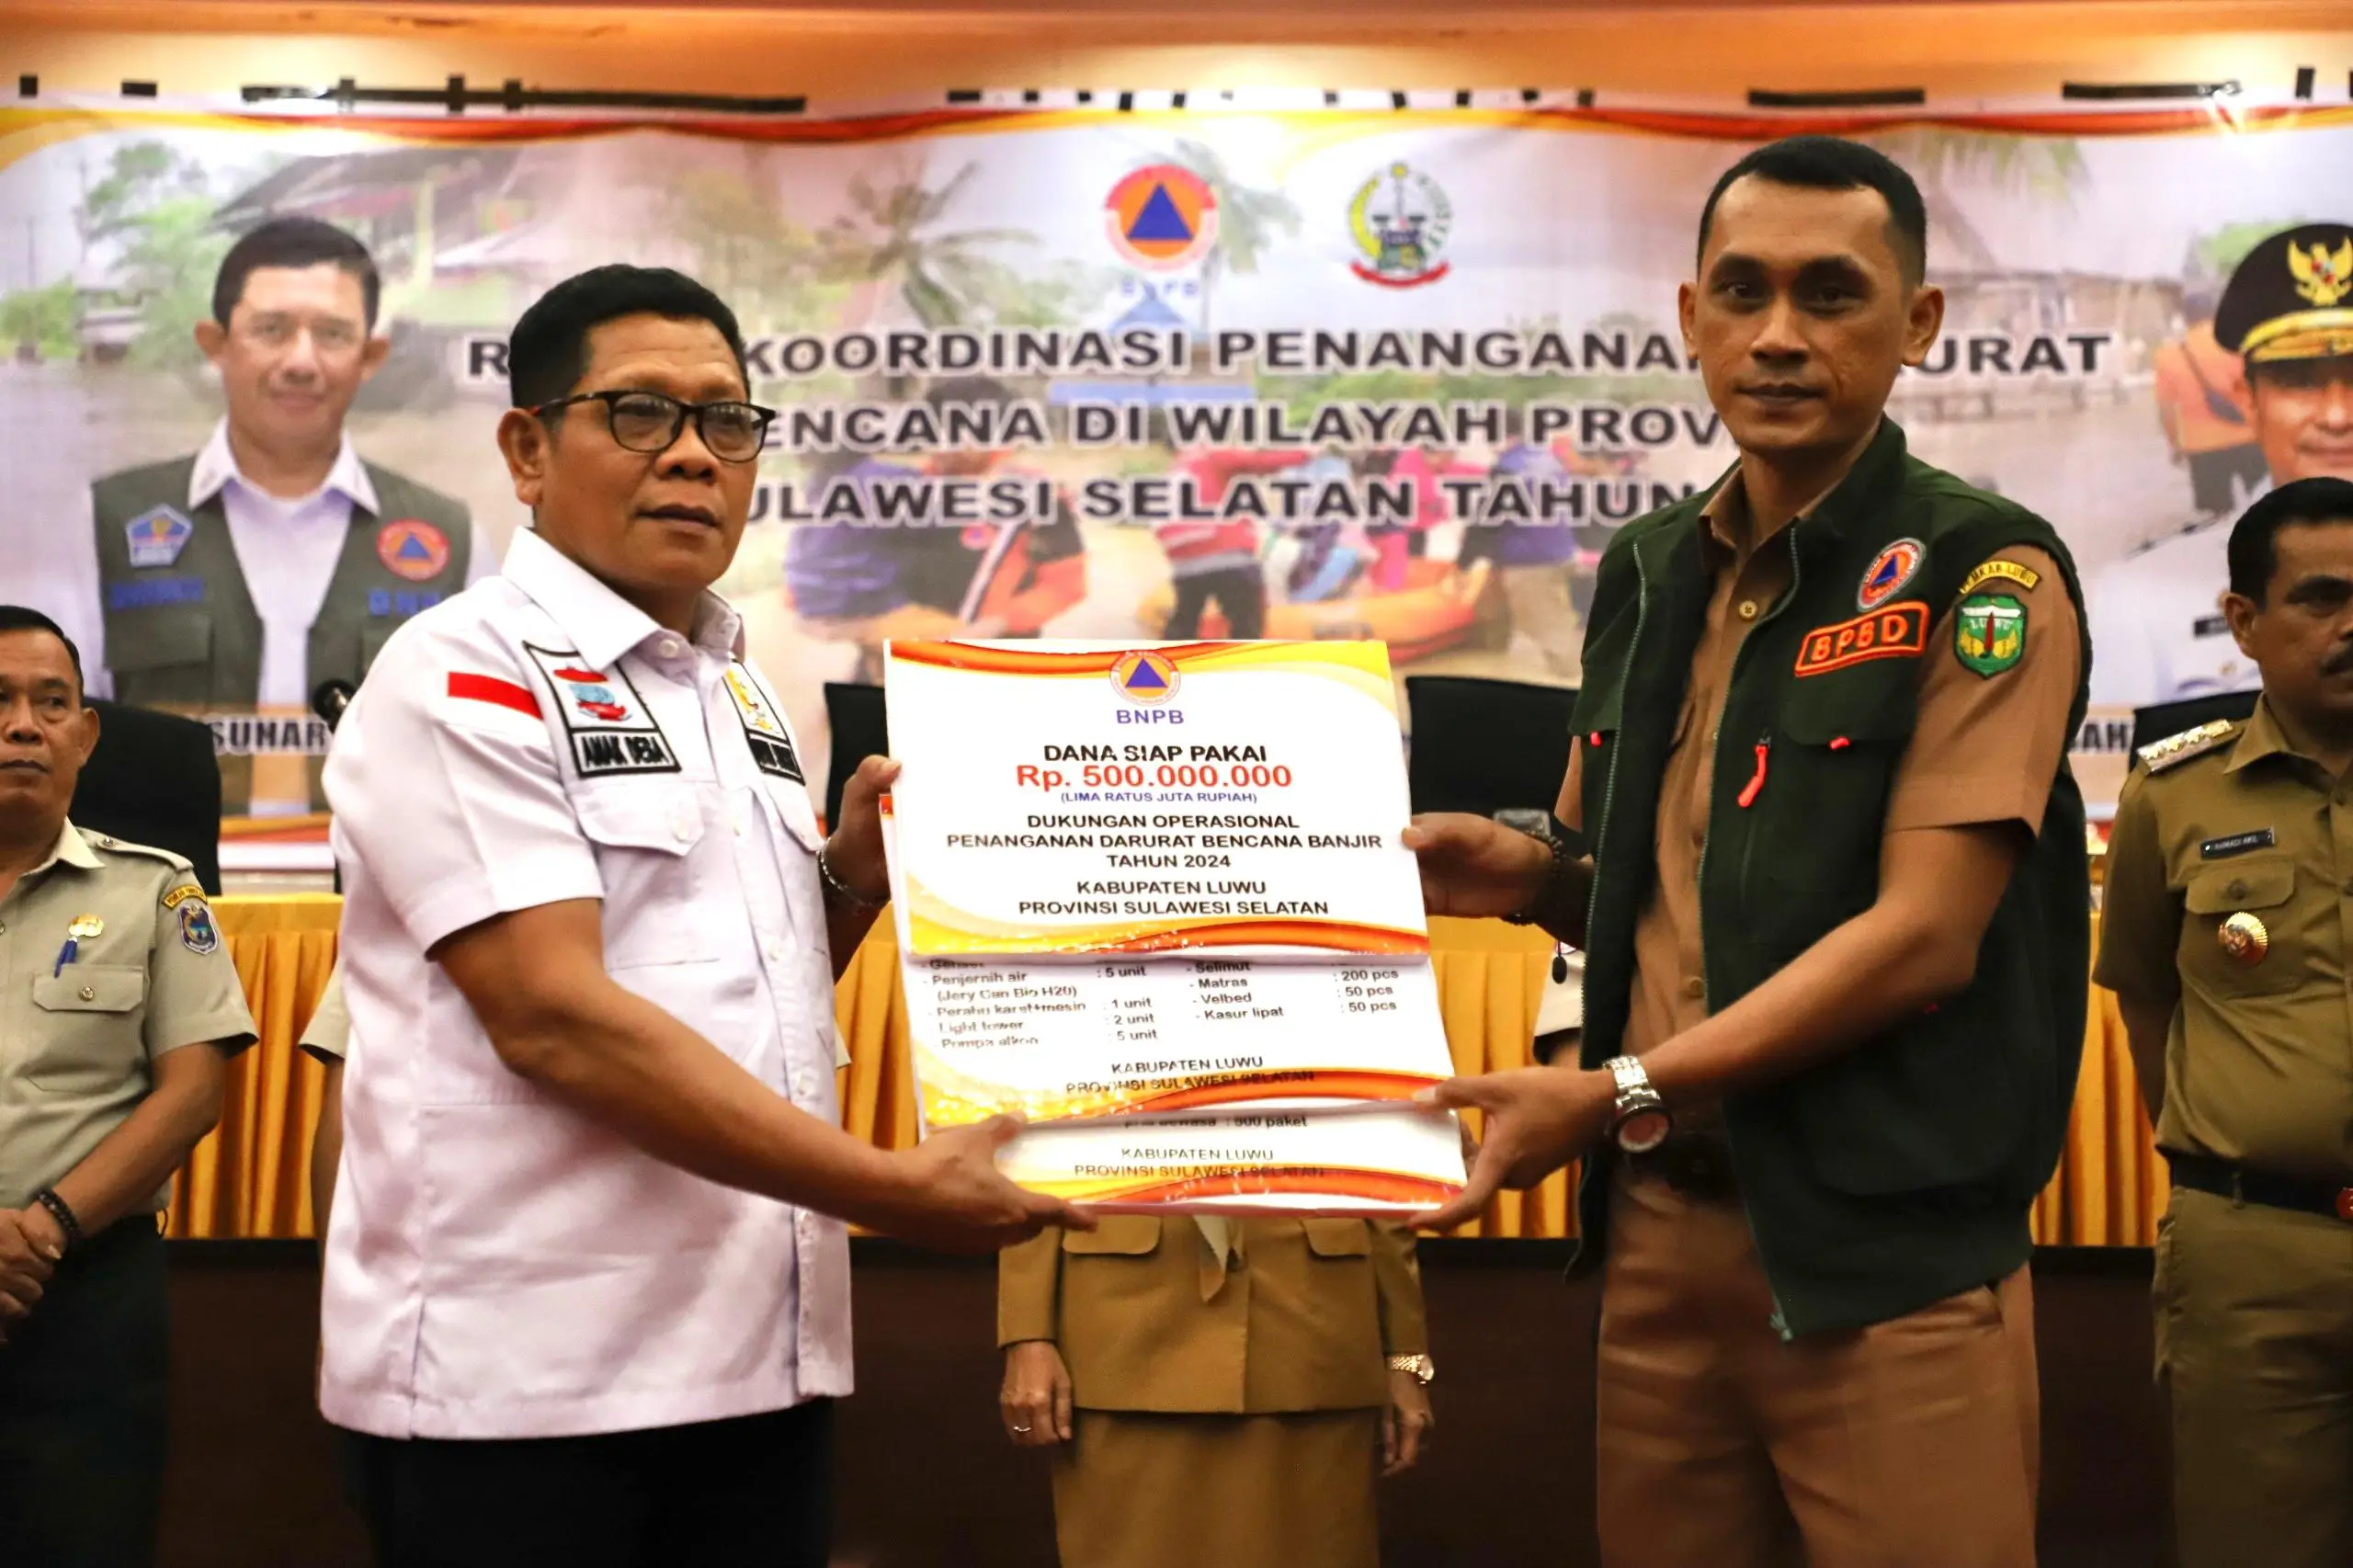 Segenap unsur forkompimda memberikan bantuan secara simbolis kepada pemerintah kabupaten di wilayah Sulawesi Selatan untuk percepatan penanganan banjir dan tanah longsor, Senin (6/5).